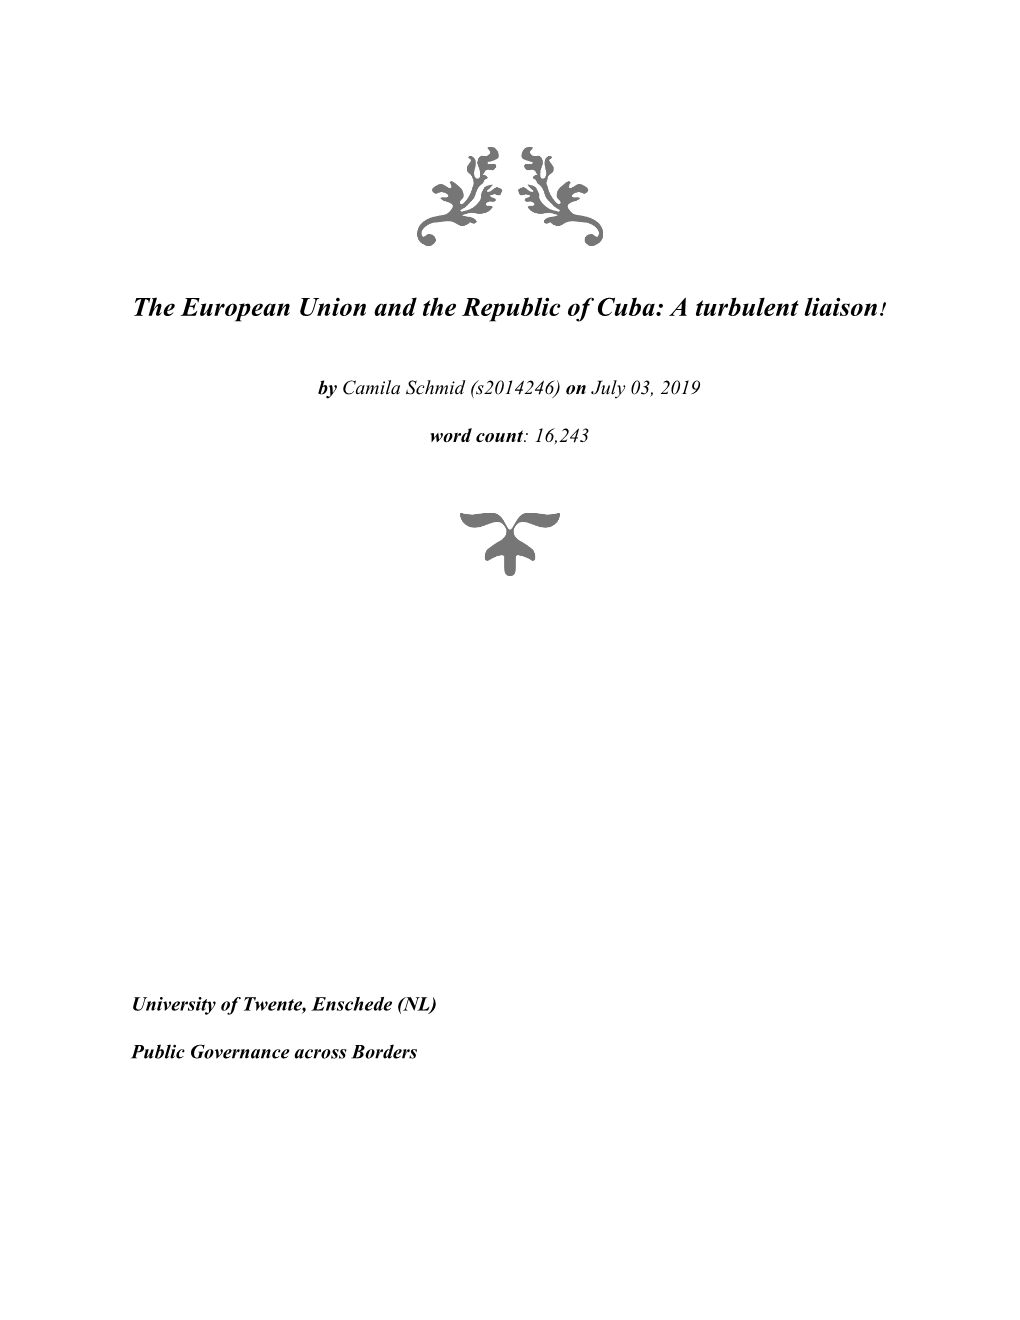 The European Union and the Republic of Cuba: a Turbulent Liaison!